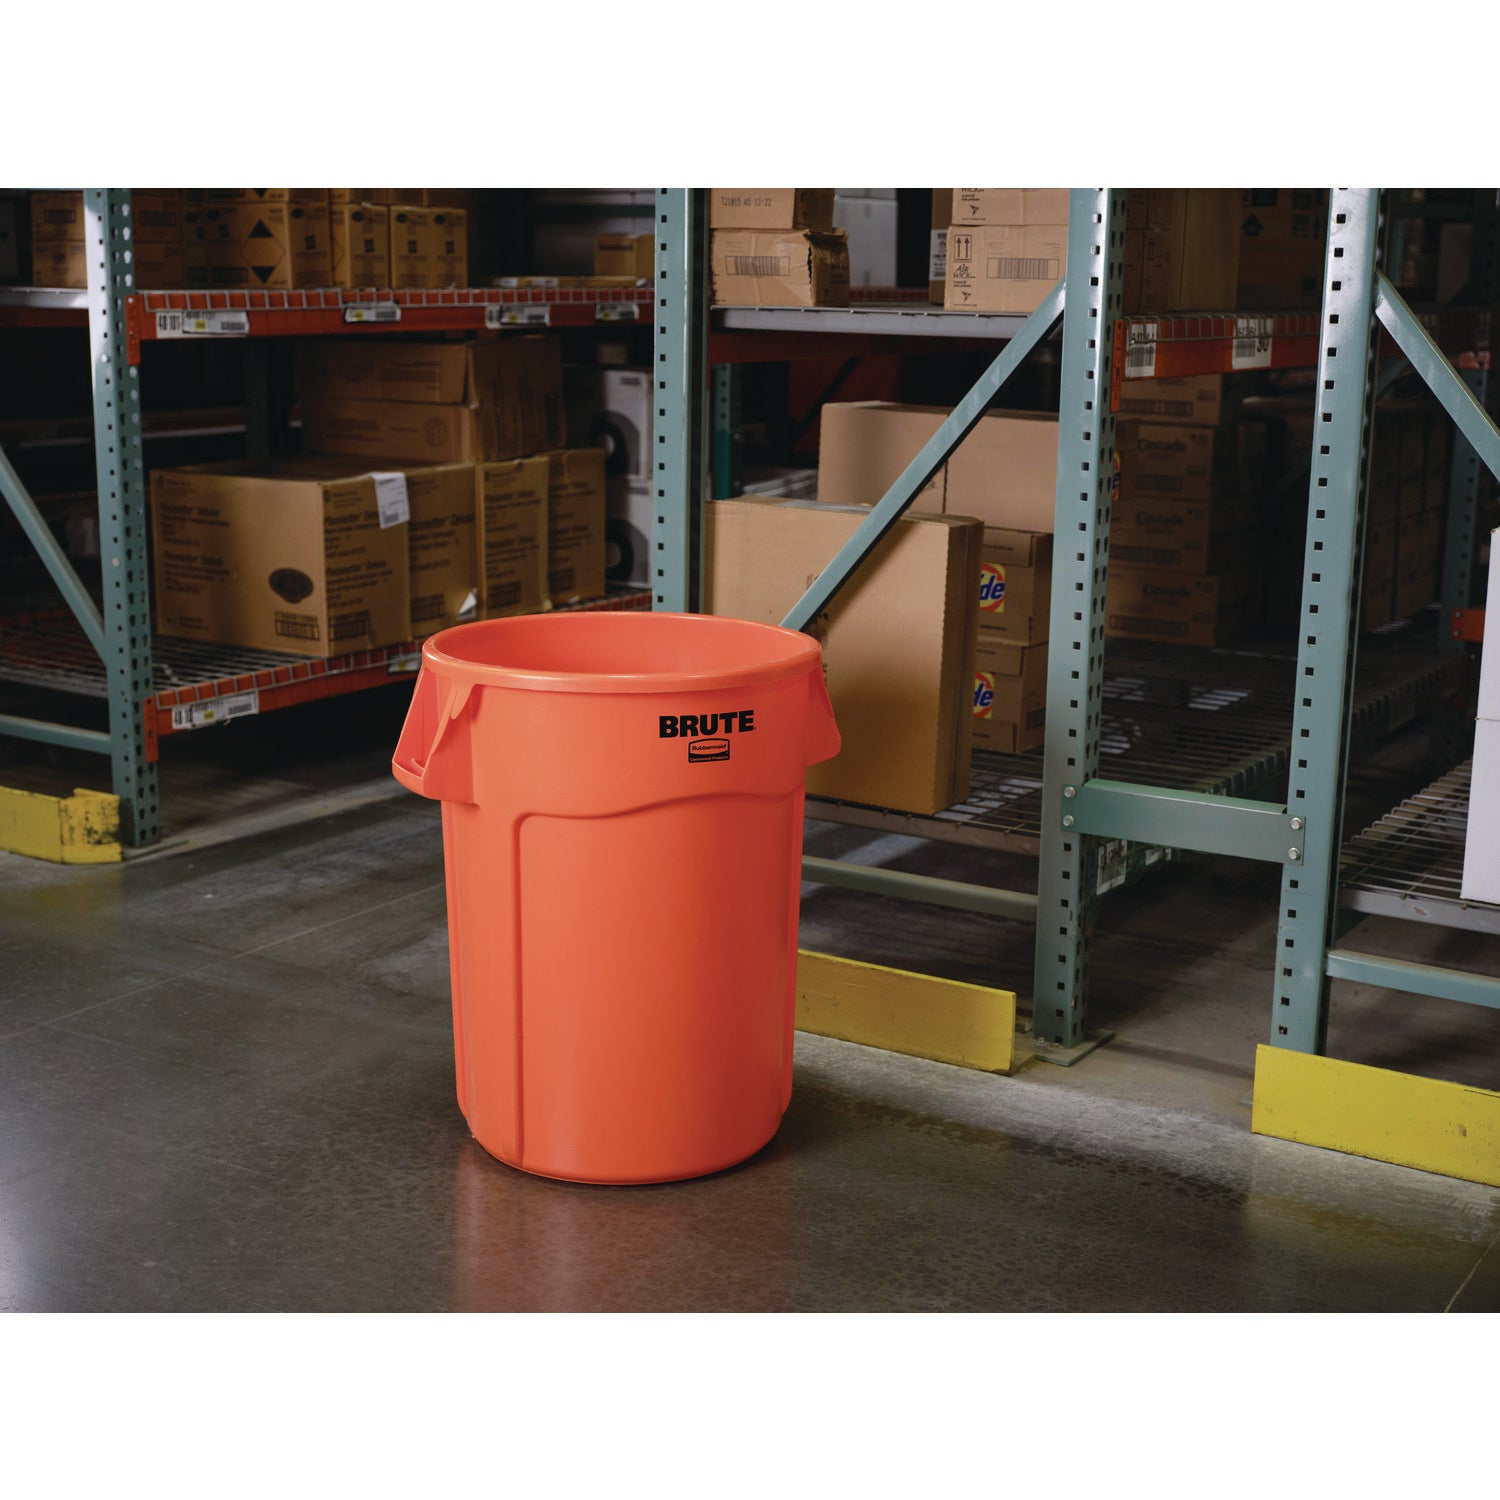 Brute Round Container, 44 gal, Plastic, Orange - 3